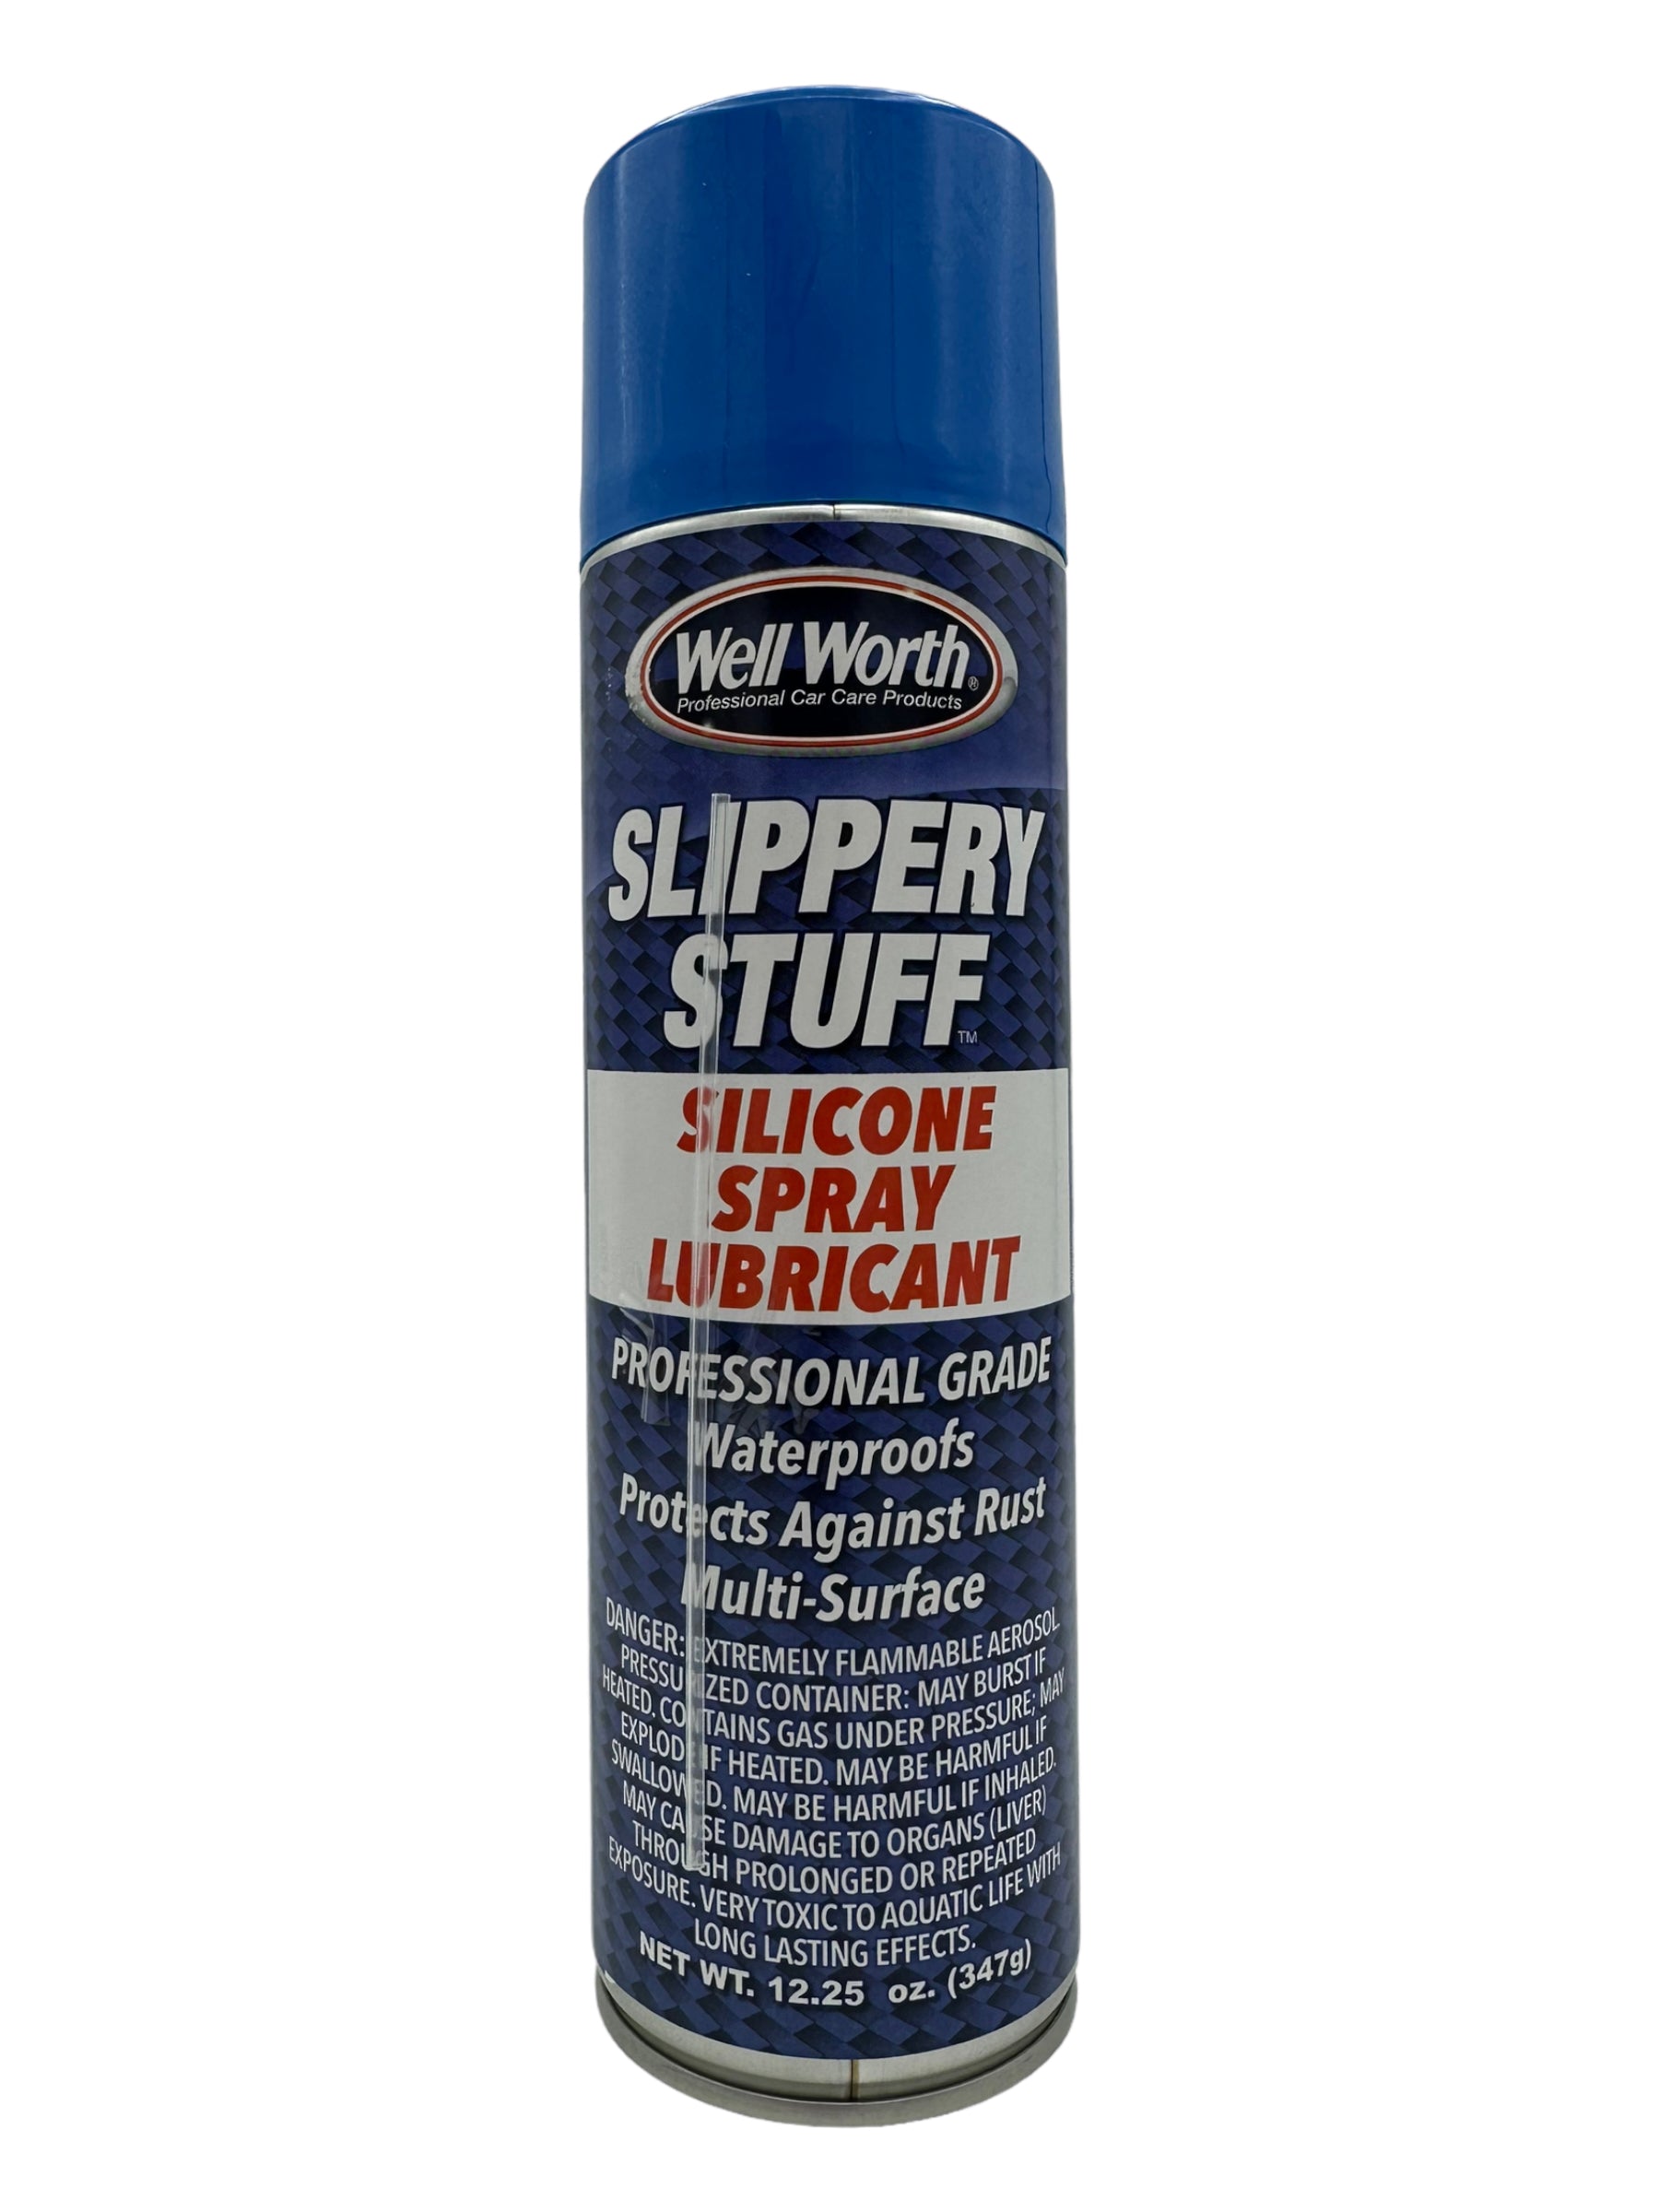 Well Worth 5001 Slippery Stuff Silicone Spray Lubricant, 12.5 fl. oz.